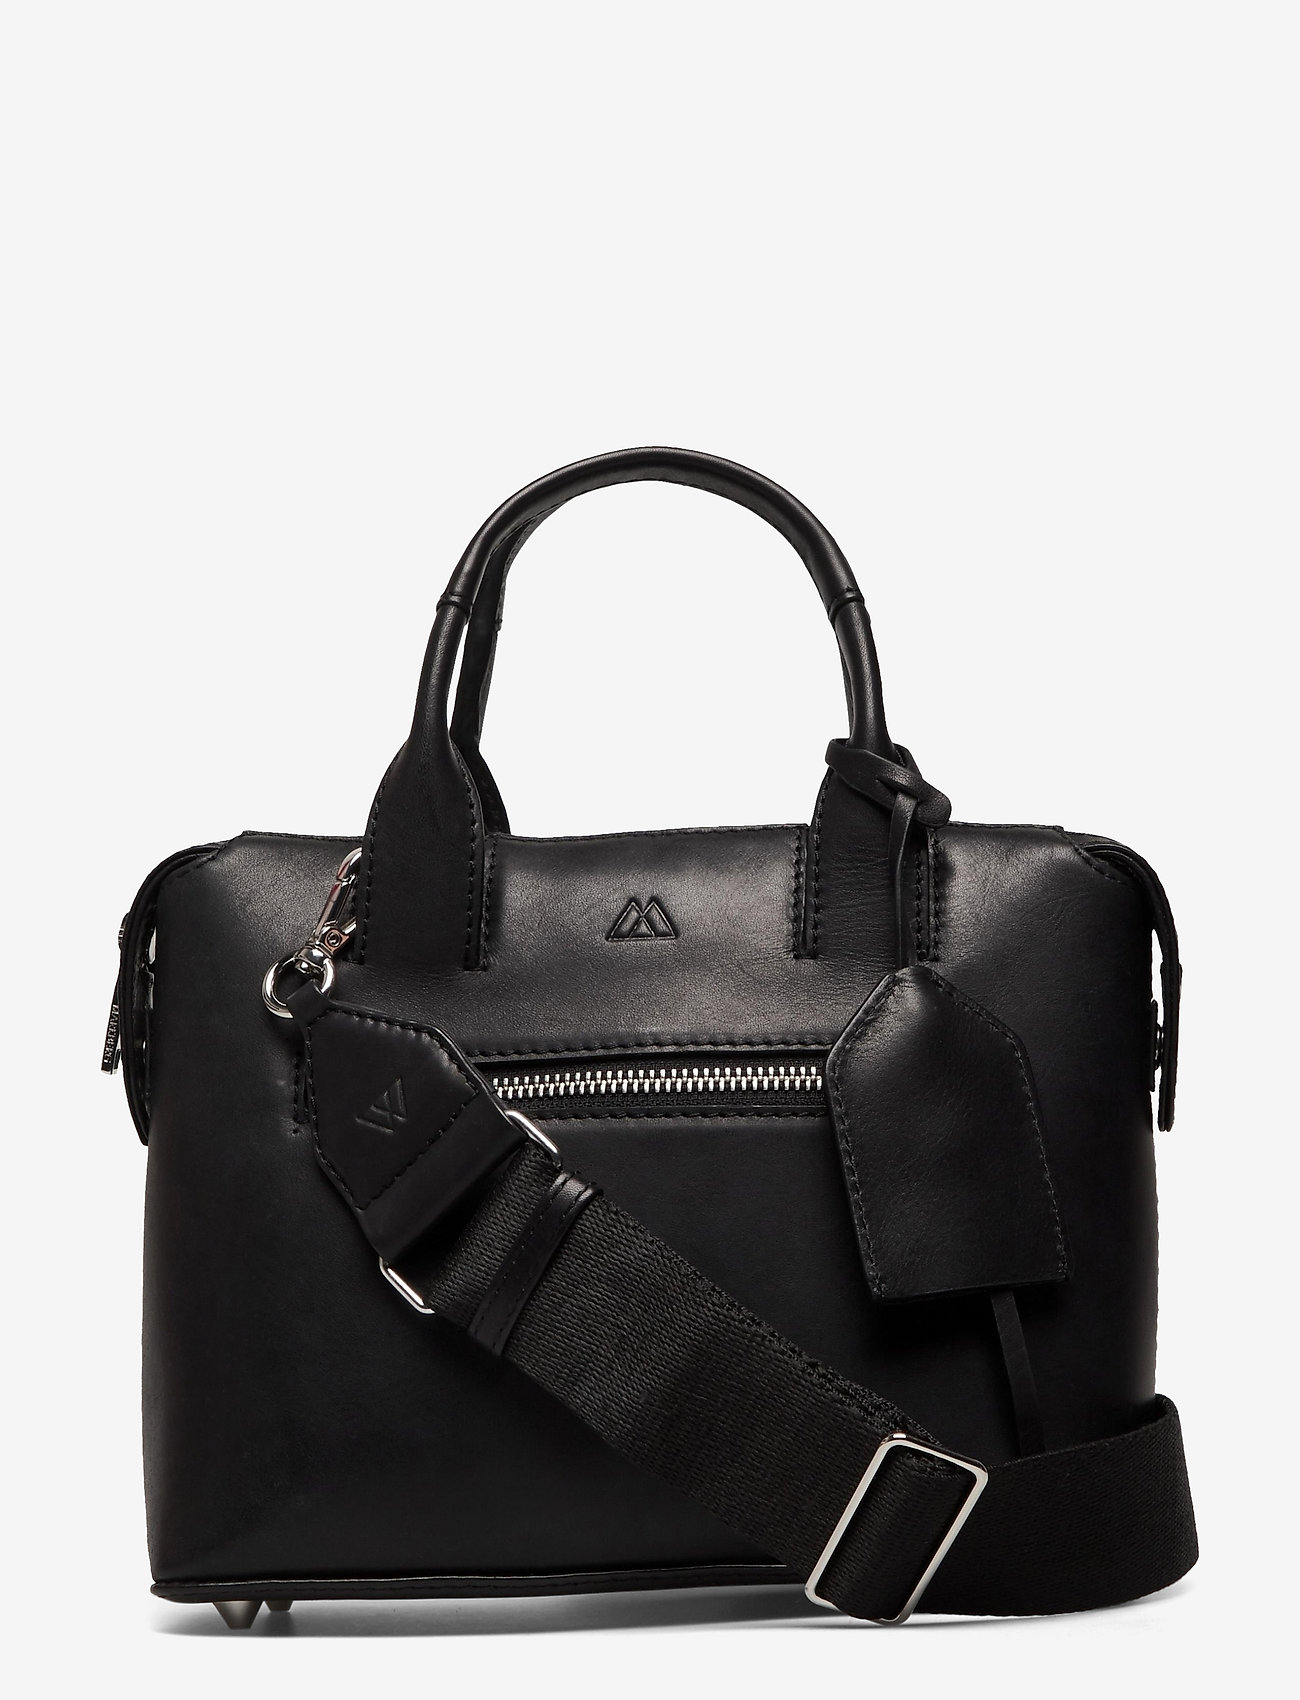 Markberg - Abrielle Small Bag, Antique - odzież imprezowa w cenach outletowych - black w/black - 0